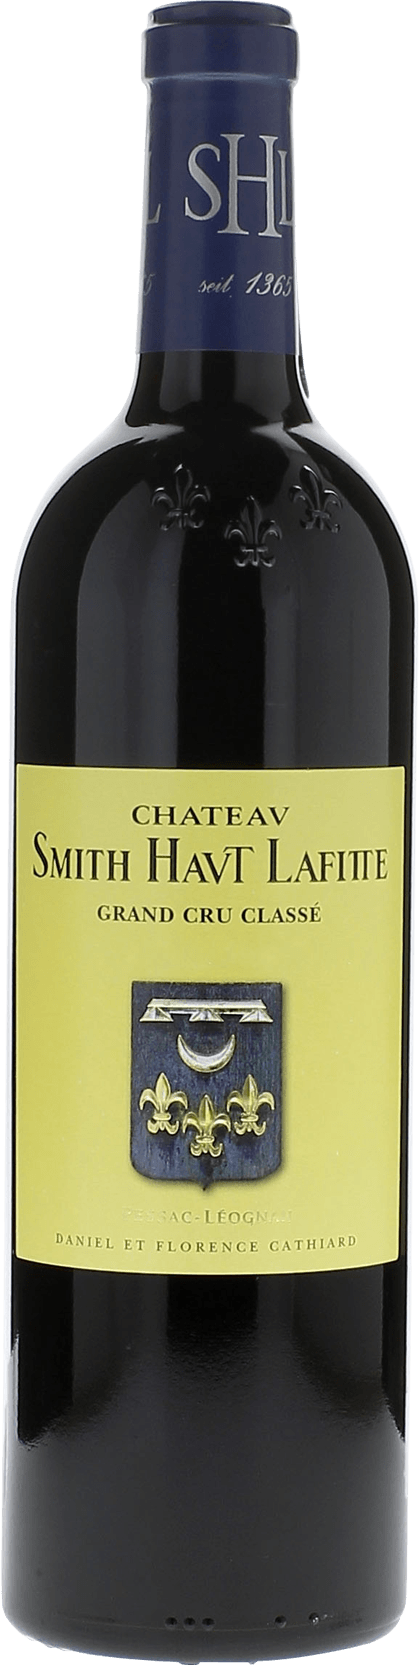 Smith haut lafitte 1994 Grand Cru Class Graves, Bordeaux rouge